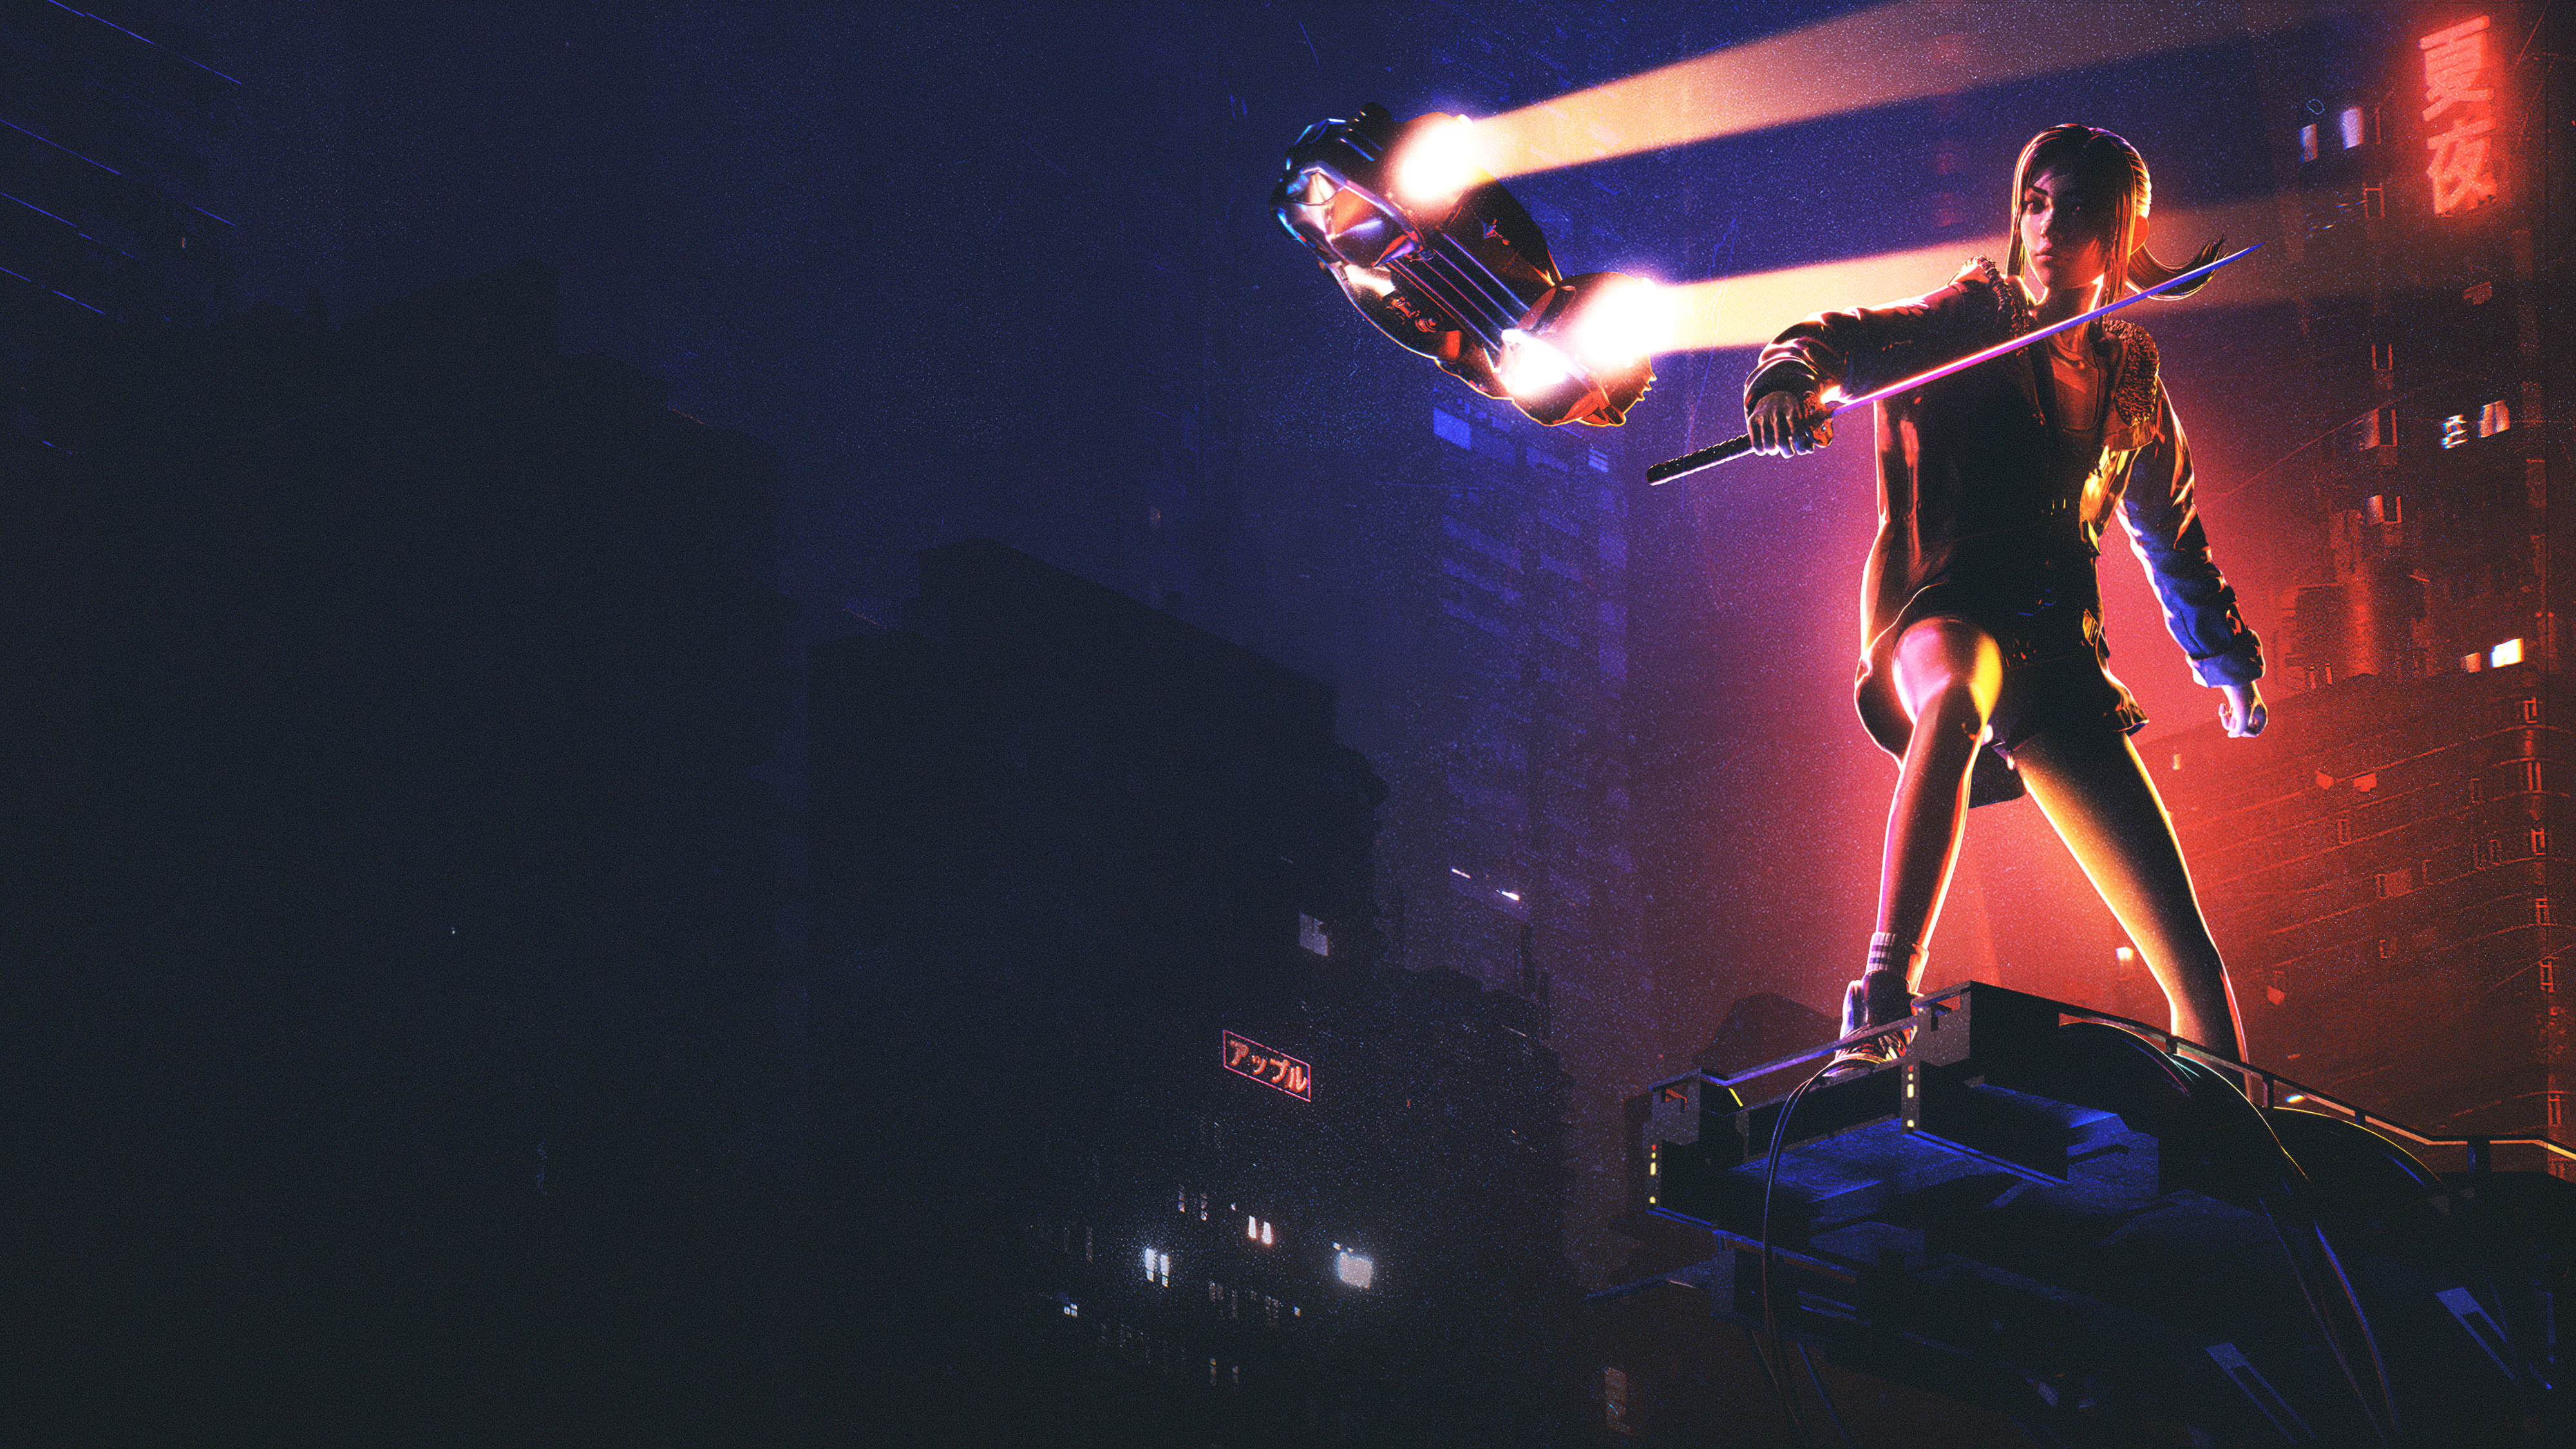 Blade Runner: Black Lotus 4k Ultra HD Wallpaper